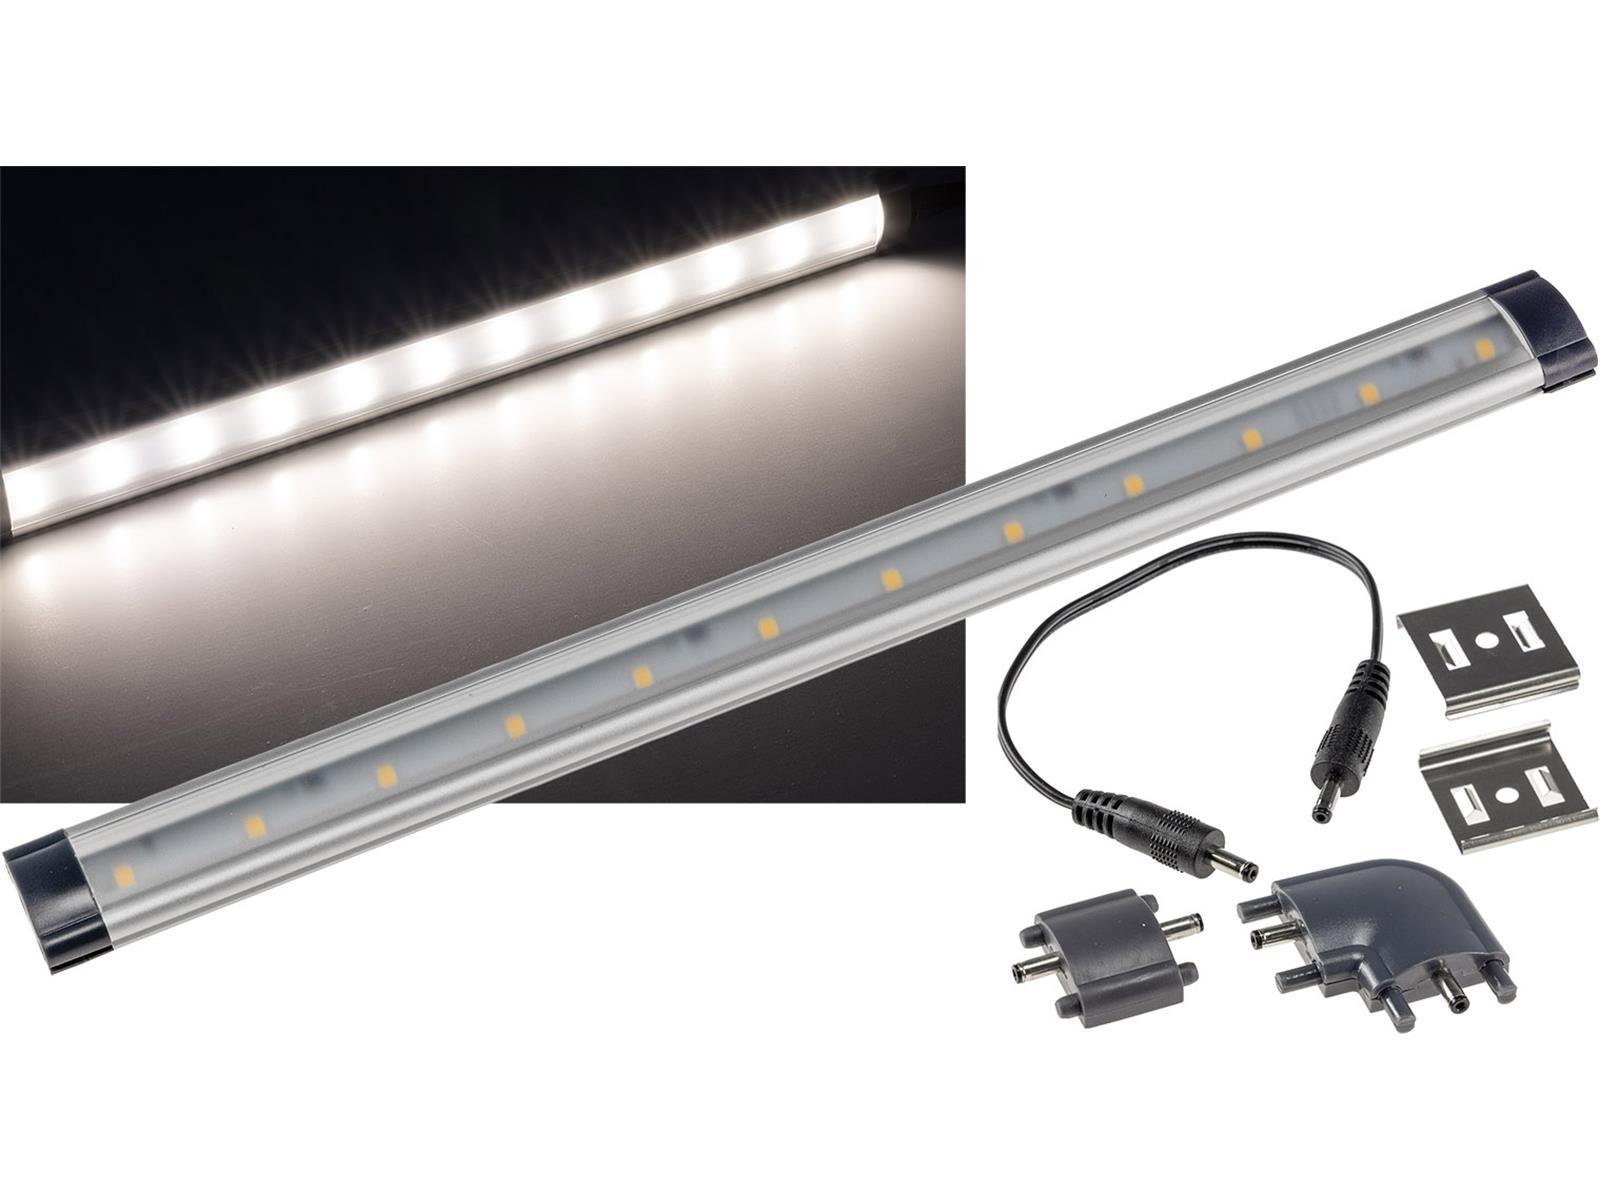 LED Unterbauleuchte "CT-FL30" 30cm260lm, 3 Watt, 4200K / tageslicht weiß